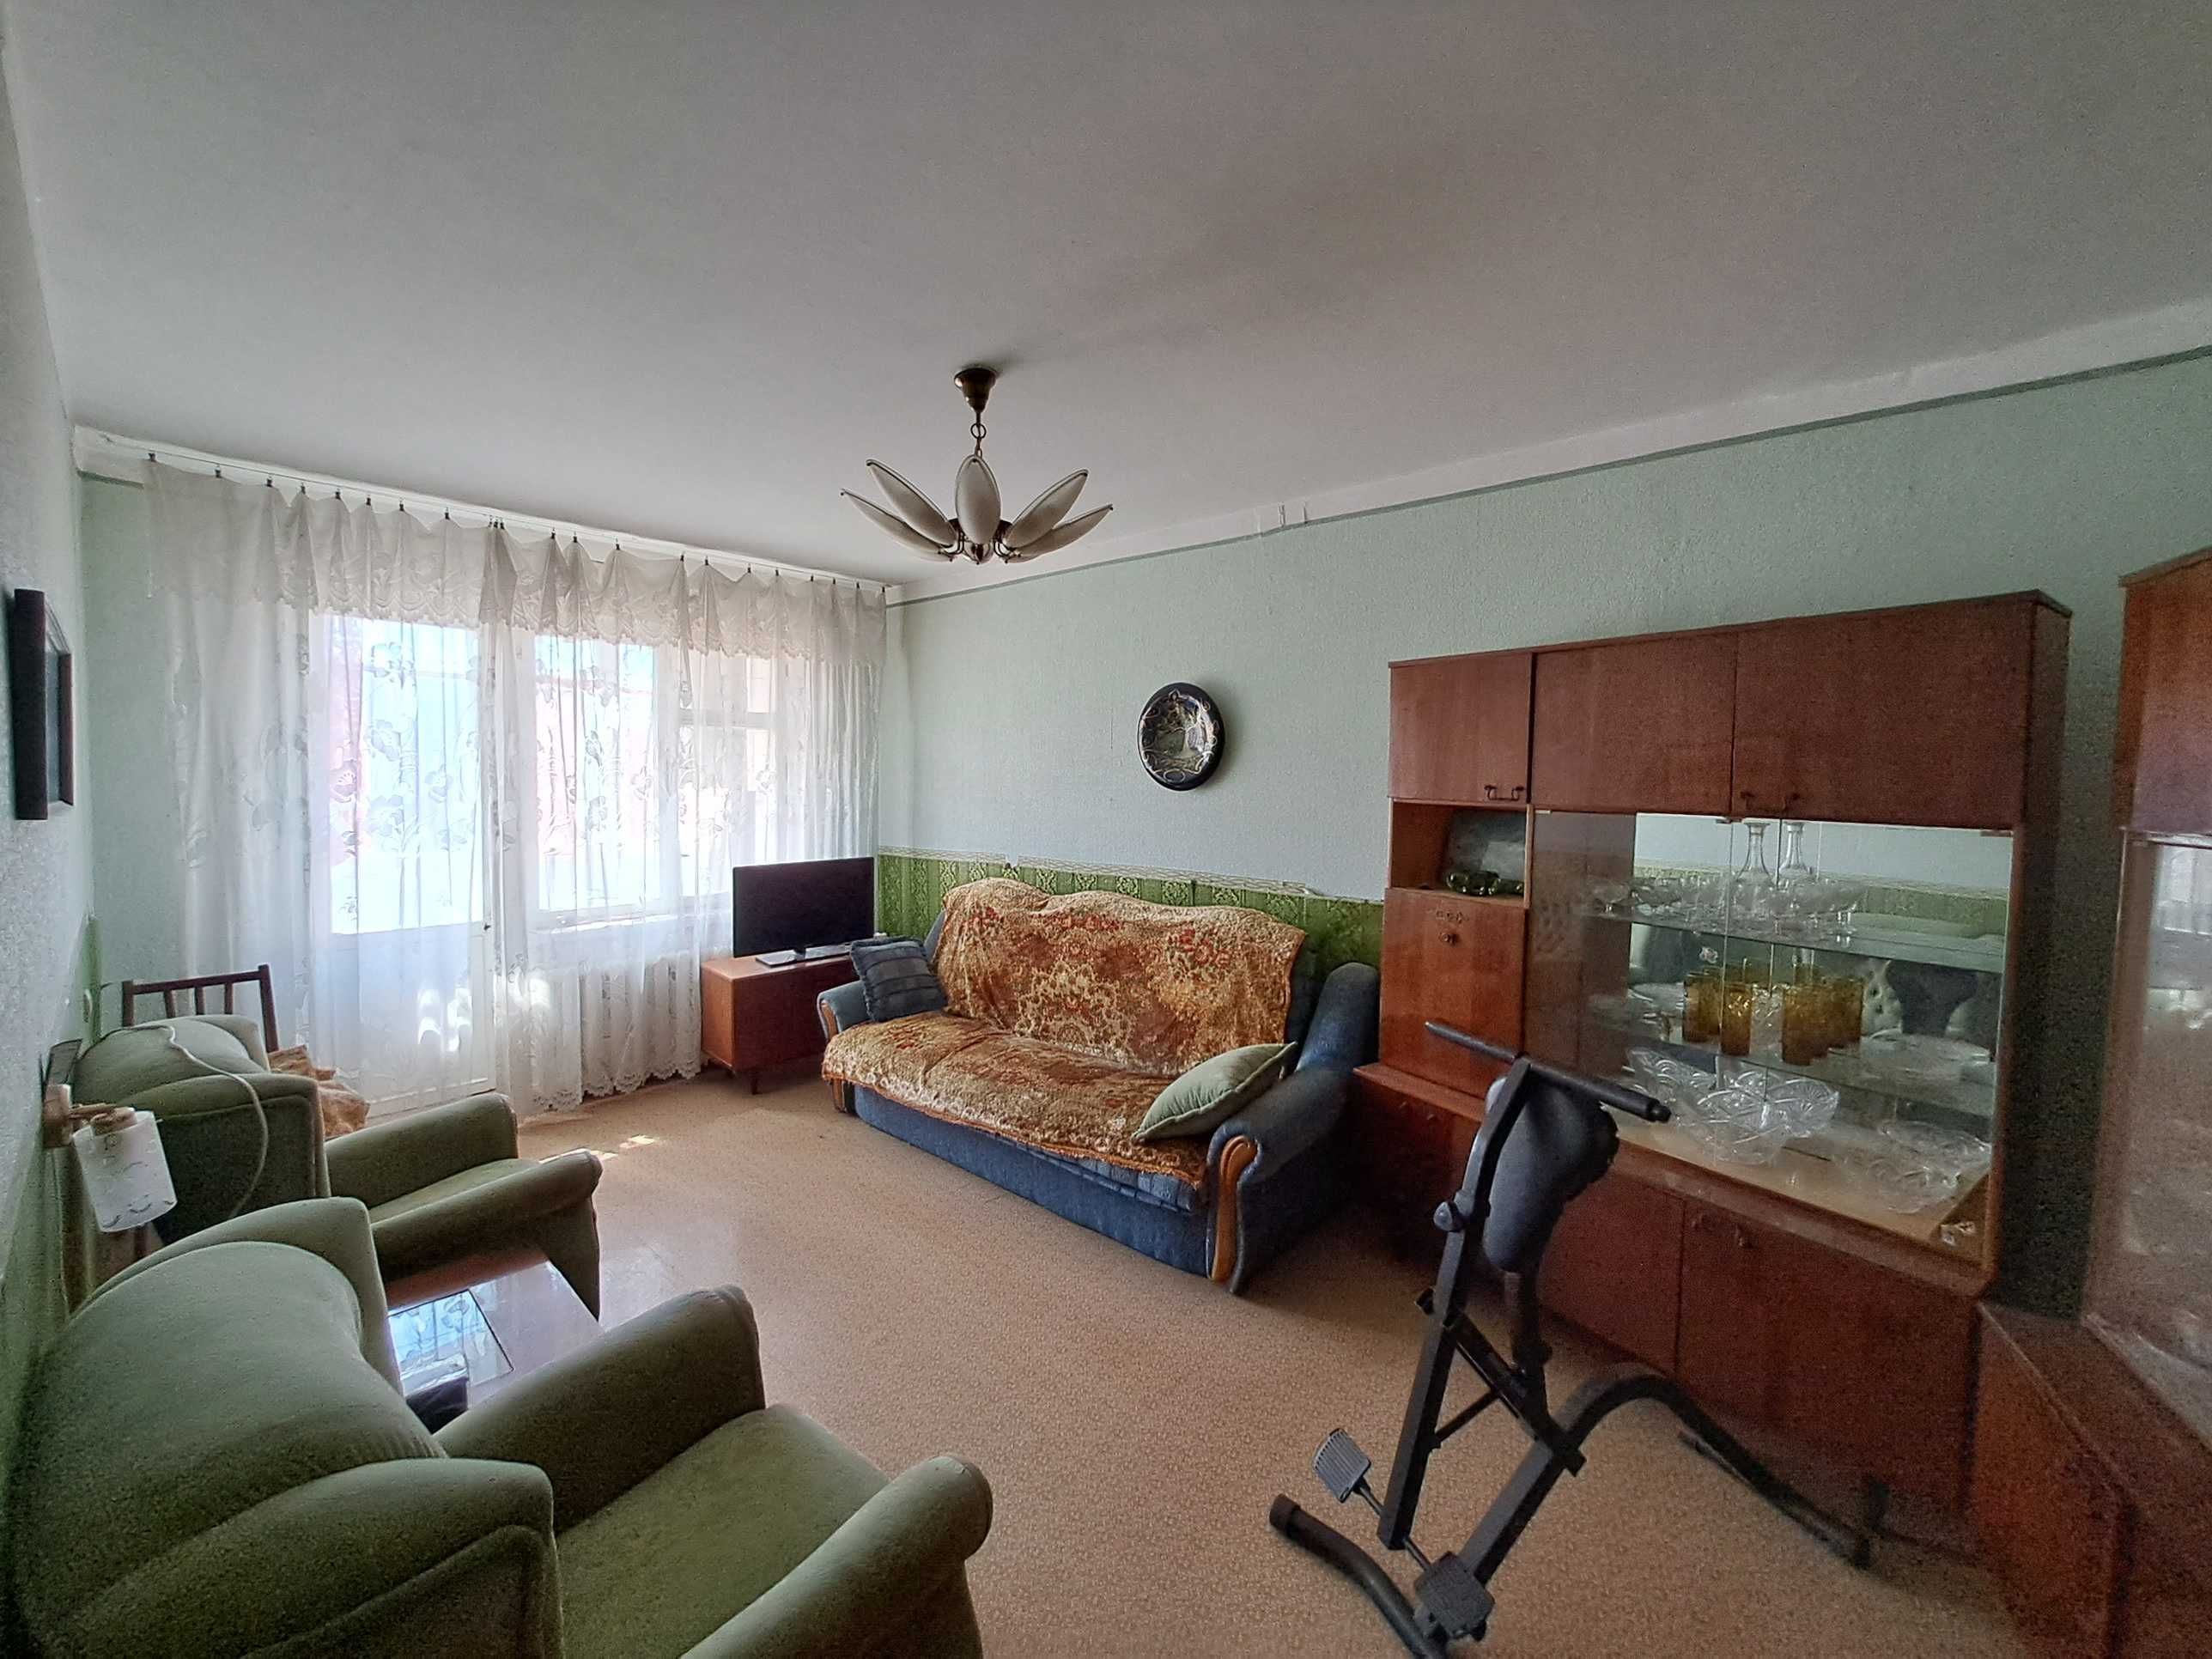 Продам 2-комнатная квартиру на Таирово. Средний этаж, жилая.